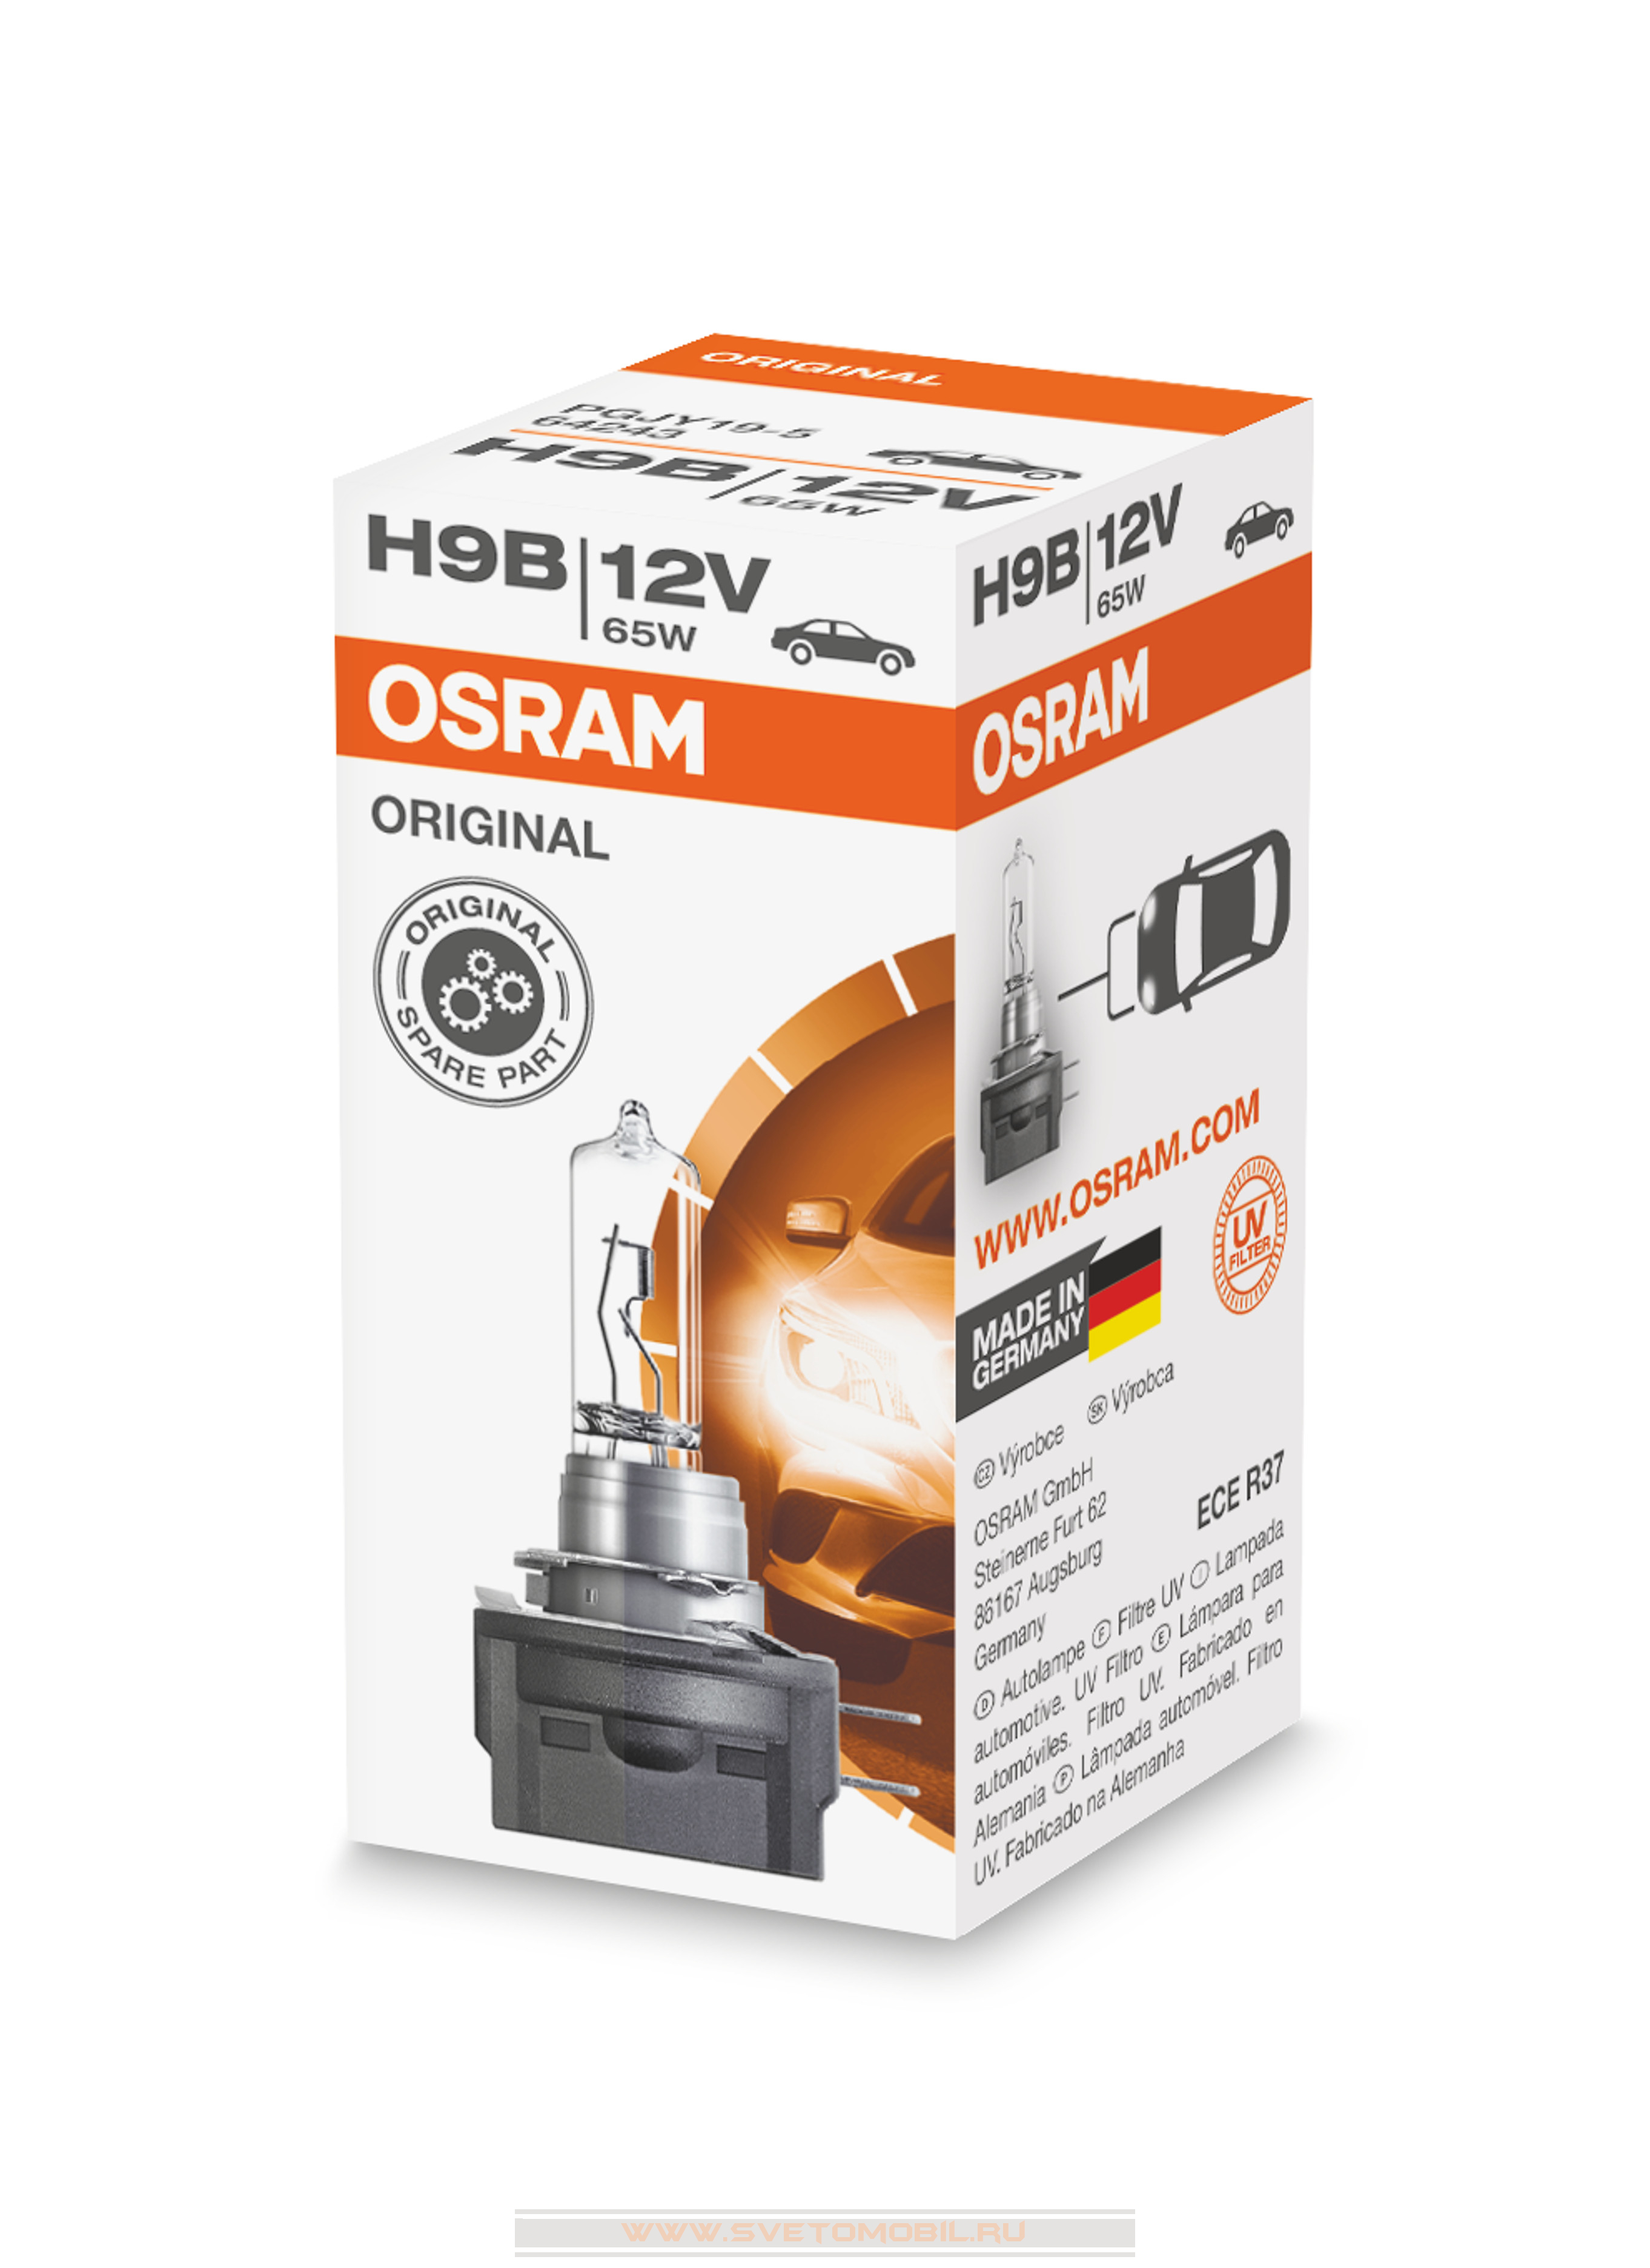 Osram Original H9B 12V/65w